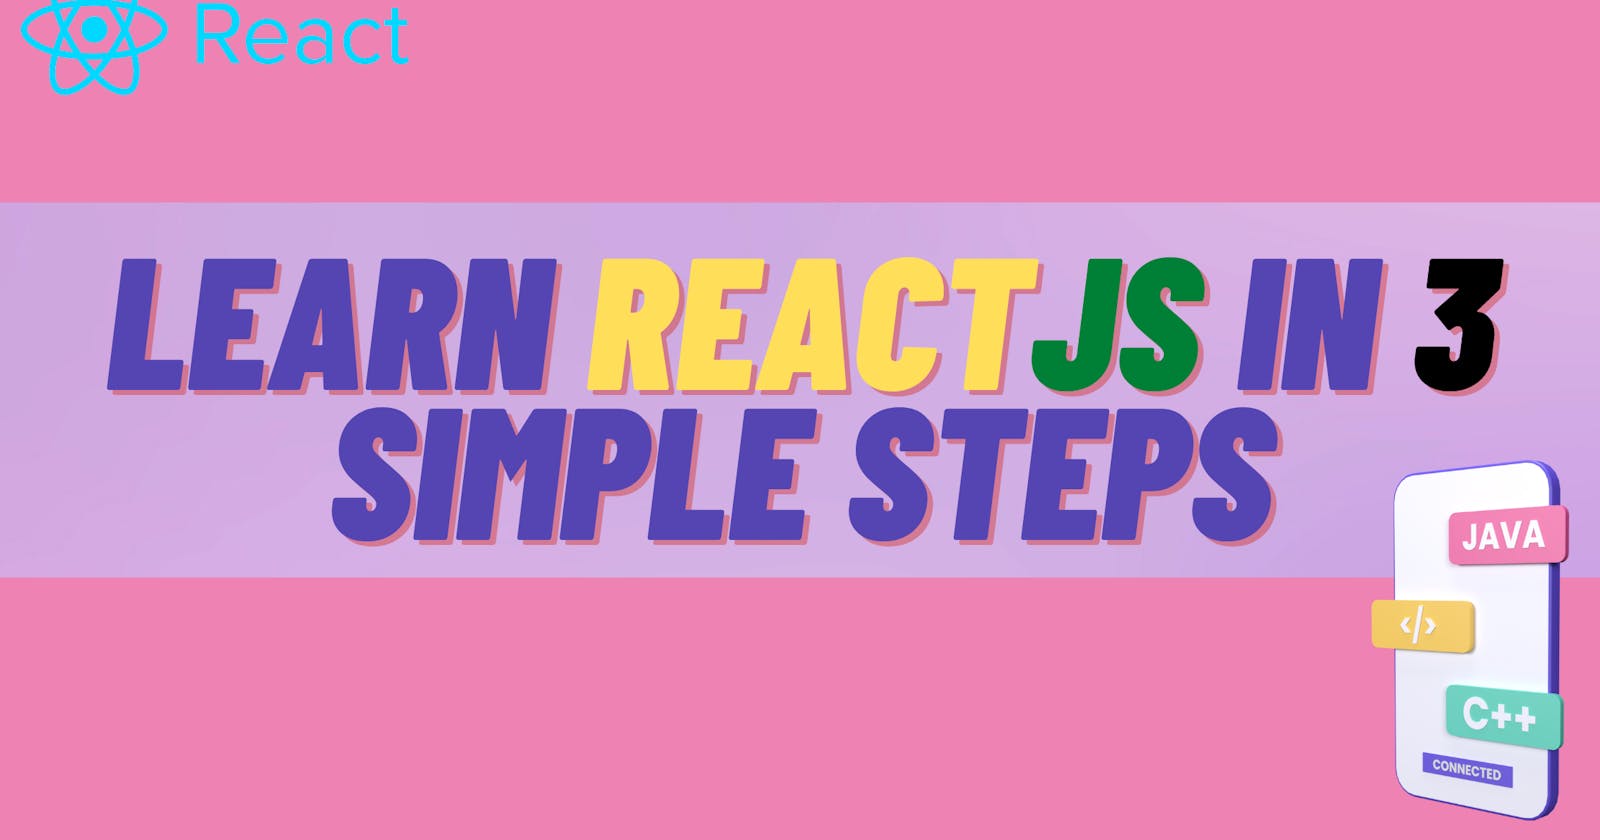 Learn ReactJS in 3 simple steps 👍